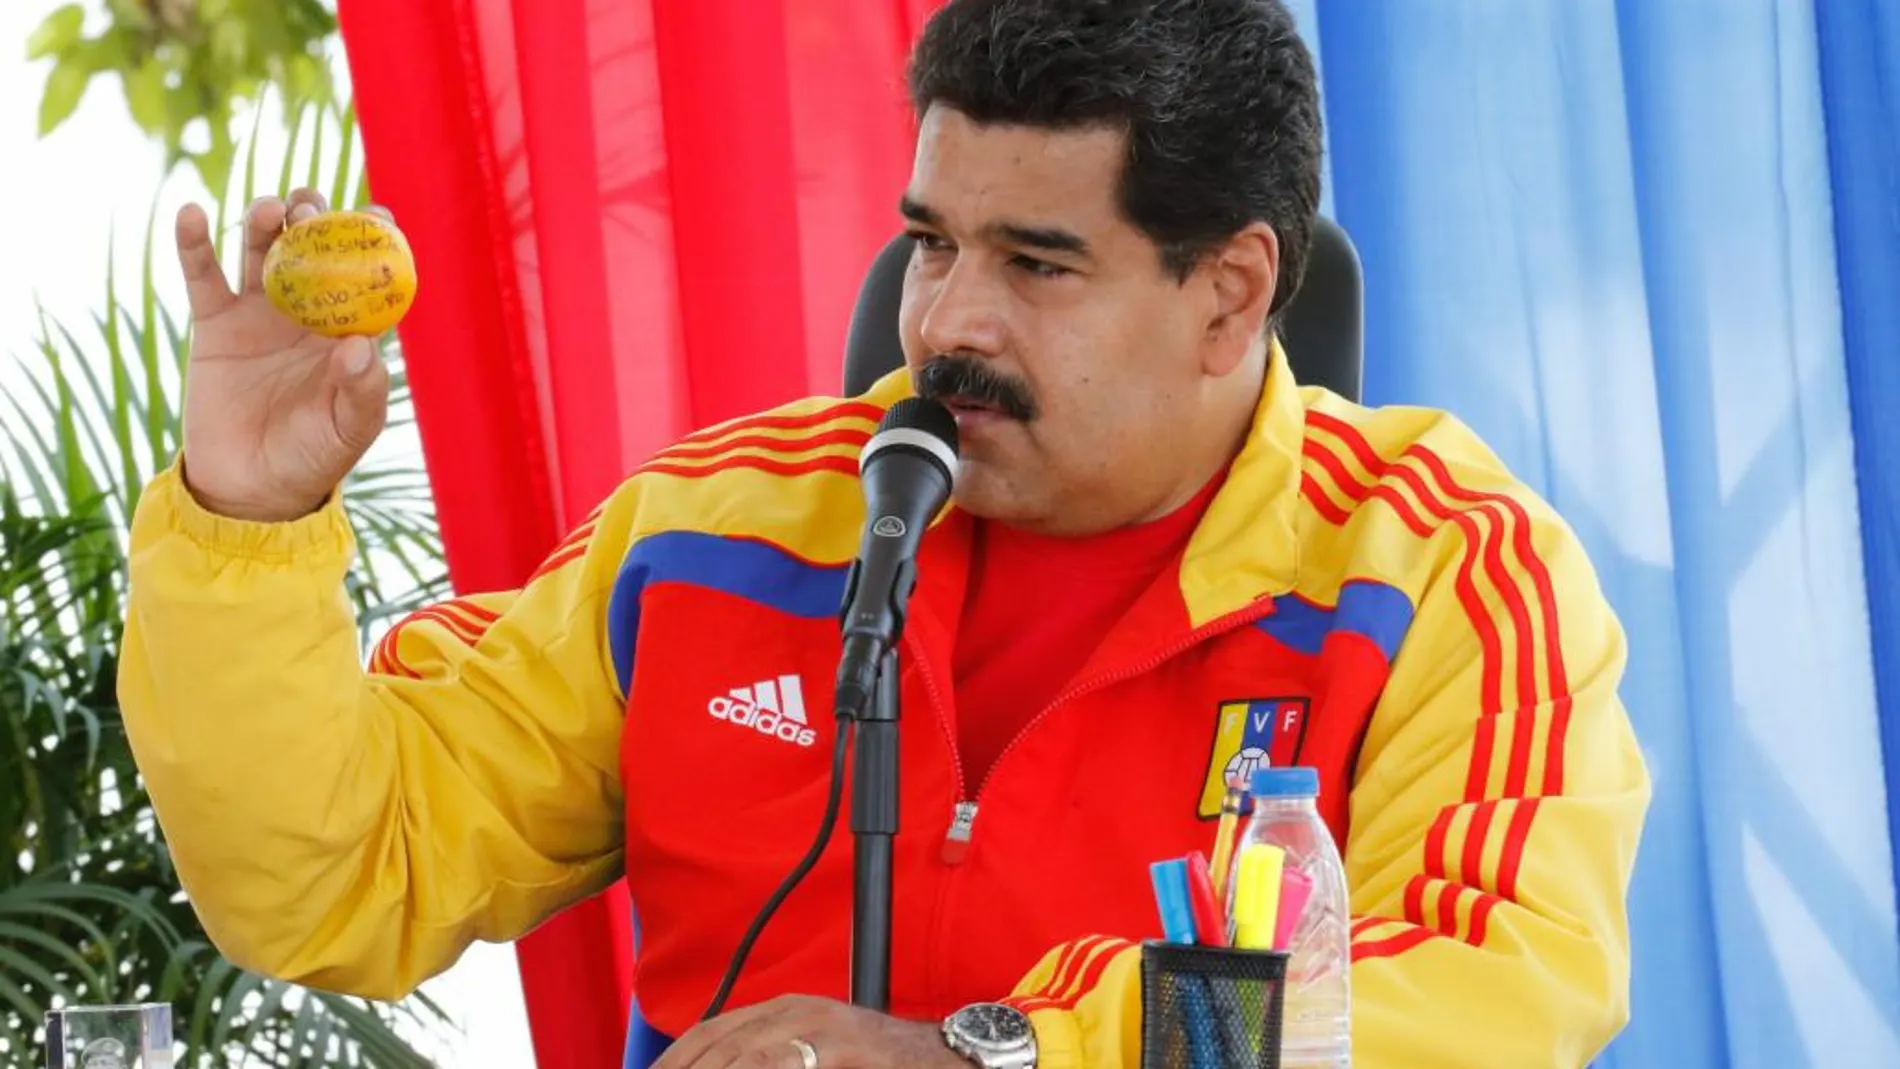 Fotografía cedida por la Presidencia de Venezuela del miércoles 22 de abril de 2015, que muestra al mandatario venezolano, Nicolás Maduro, durante un acto político en Barcelona (Venezuela)